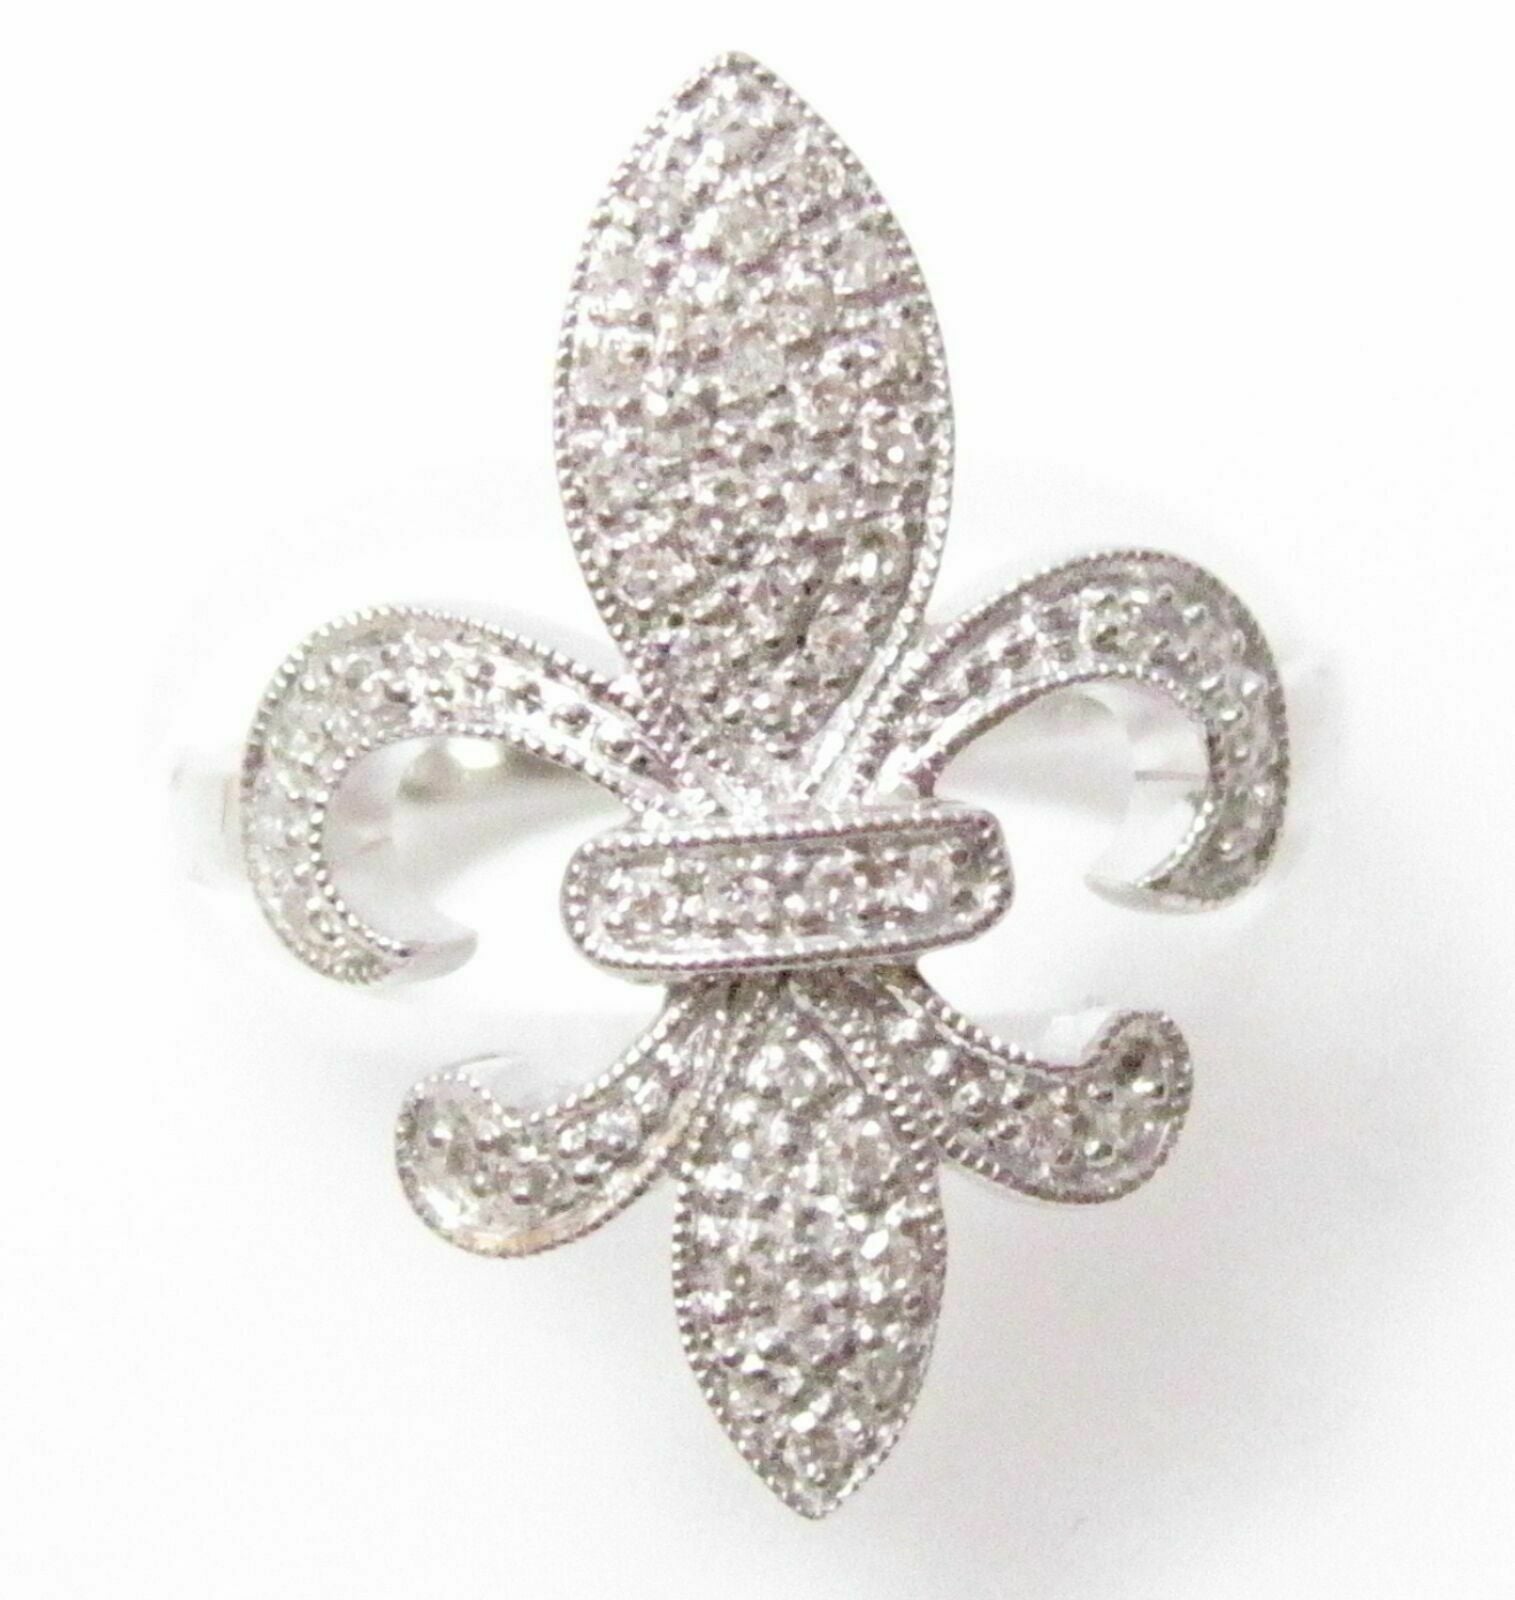 .25 TCW Fleur De Lis Round Diamond Ring Size 7 G SI1 Not Enhanced 14k White Gold